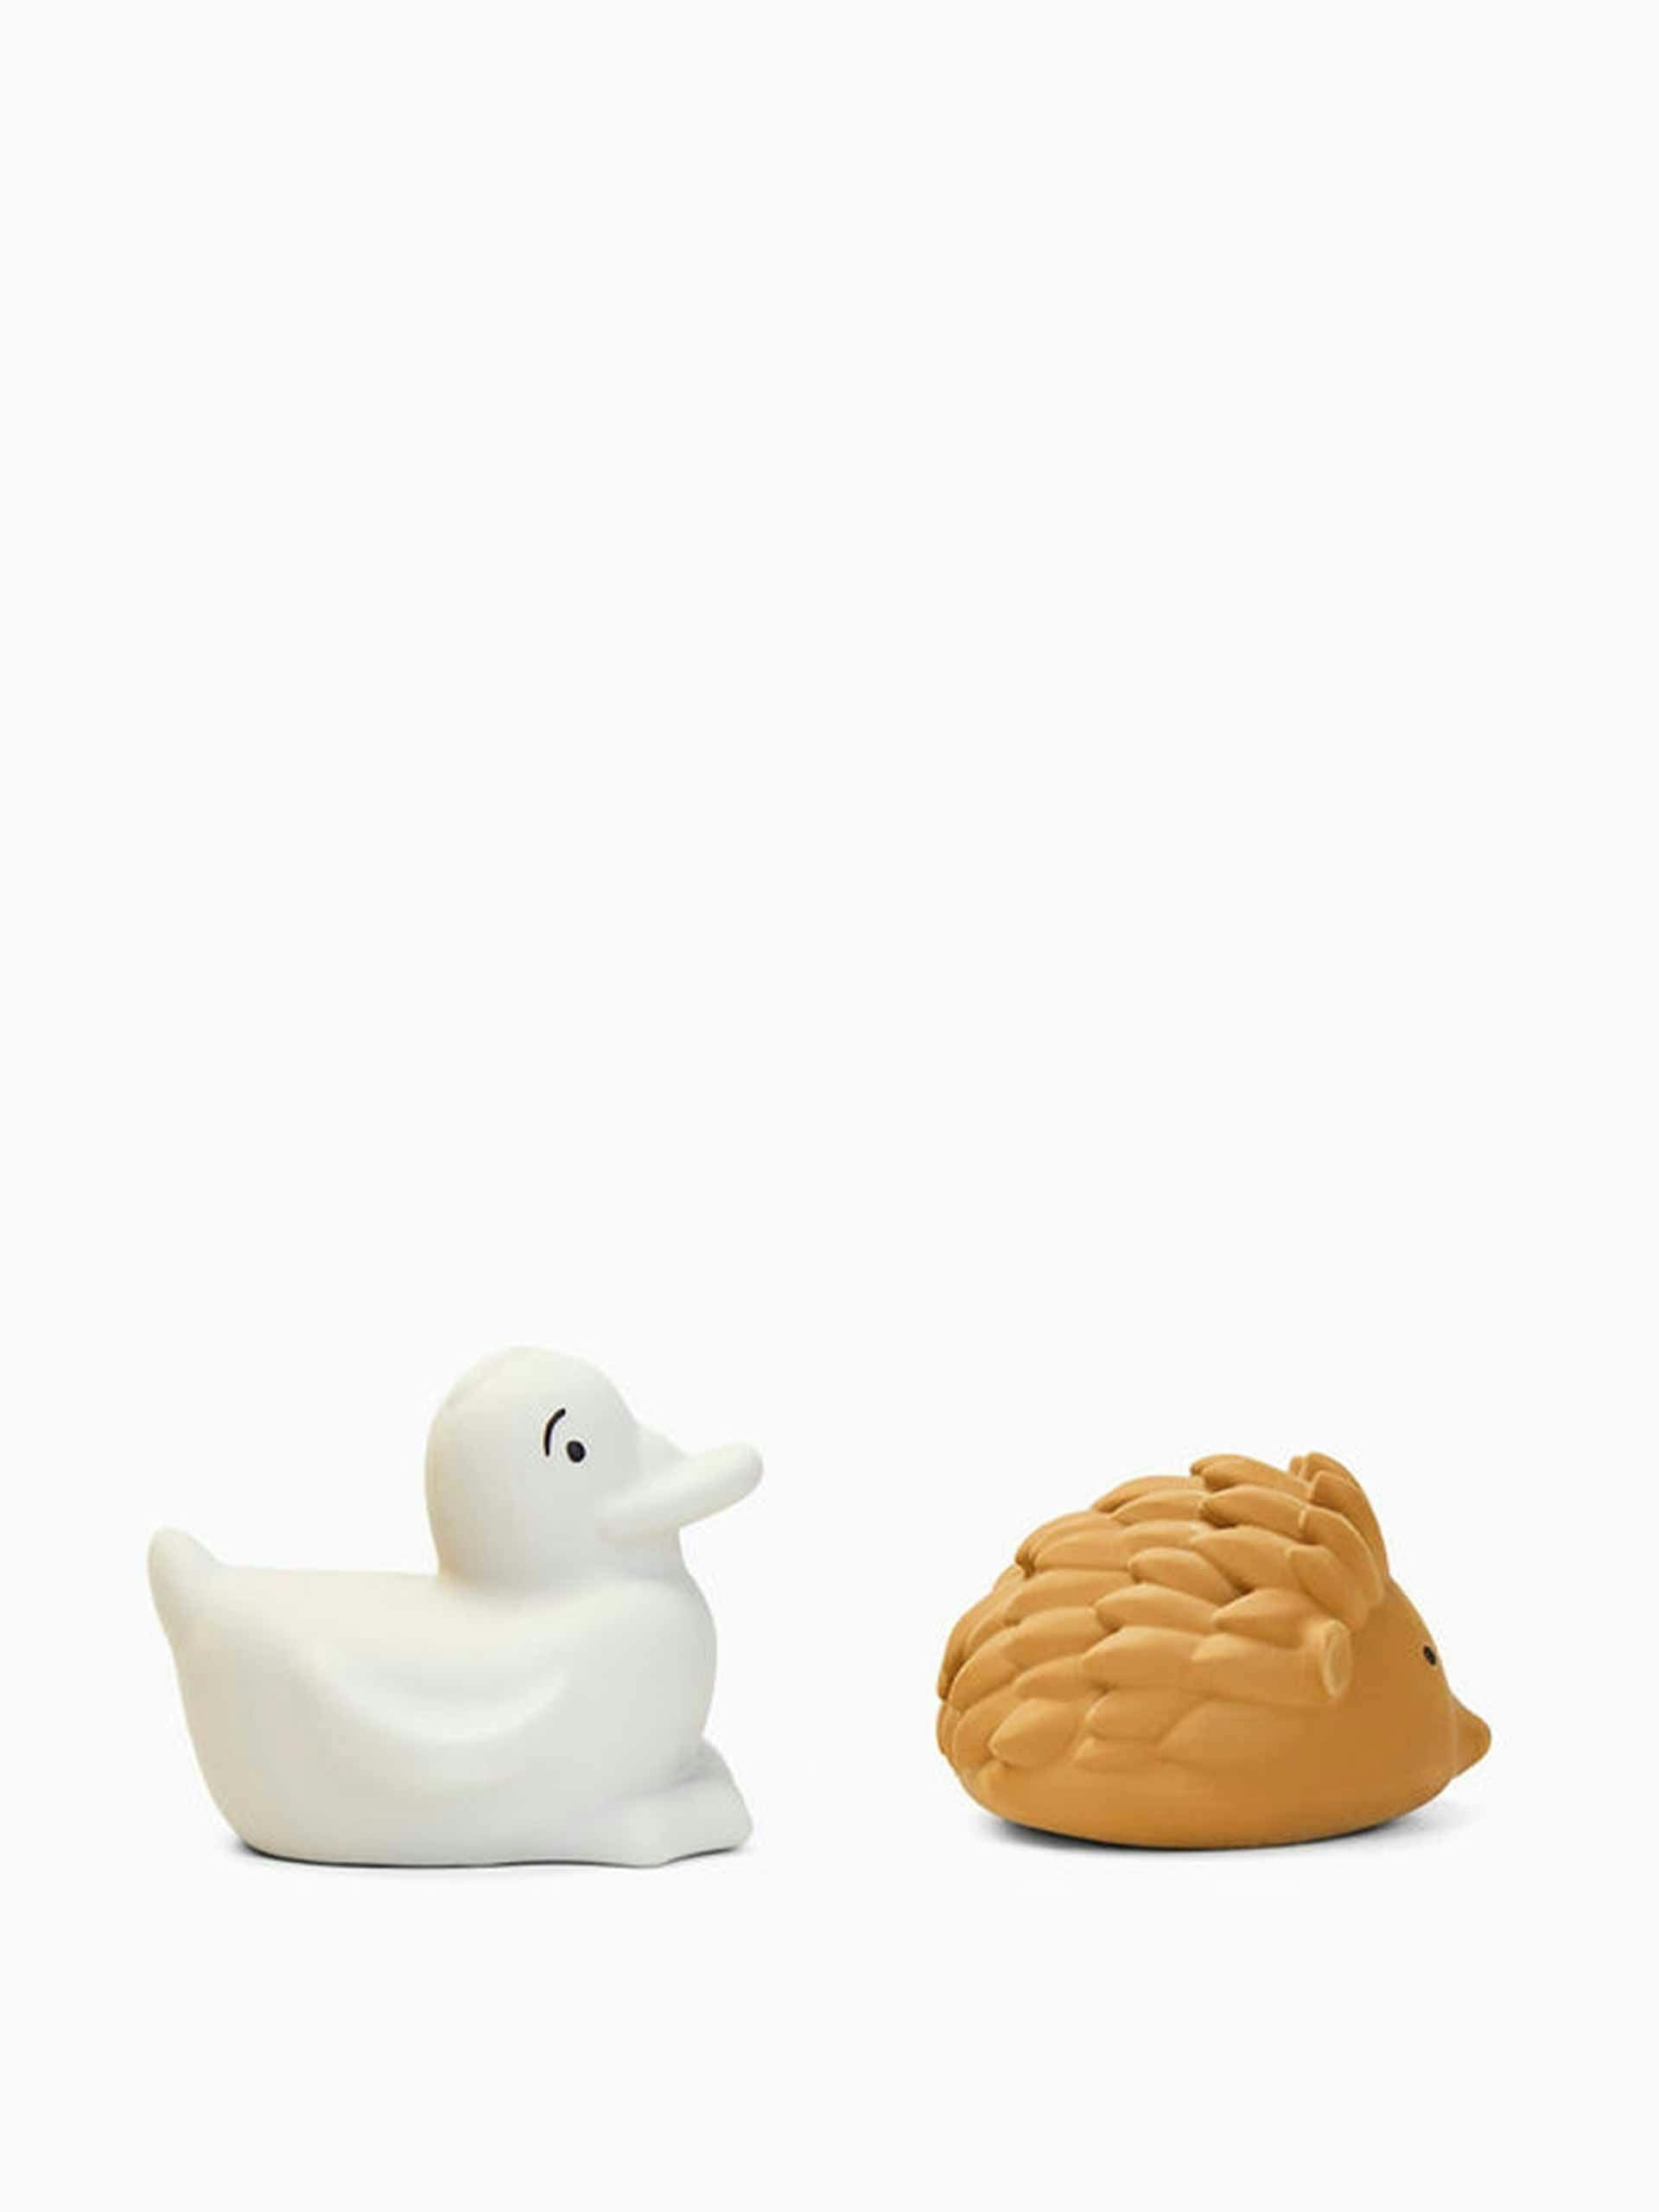 Caramel Henrik bath toys